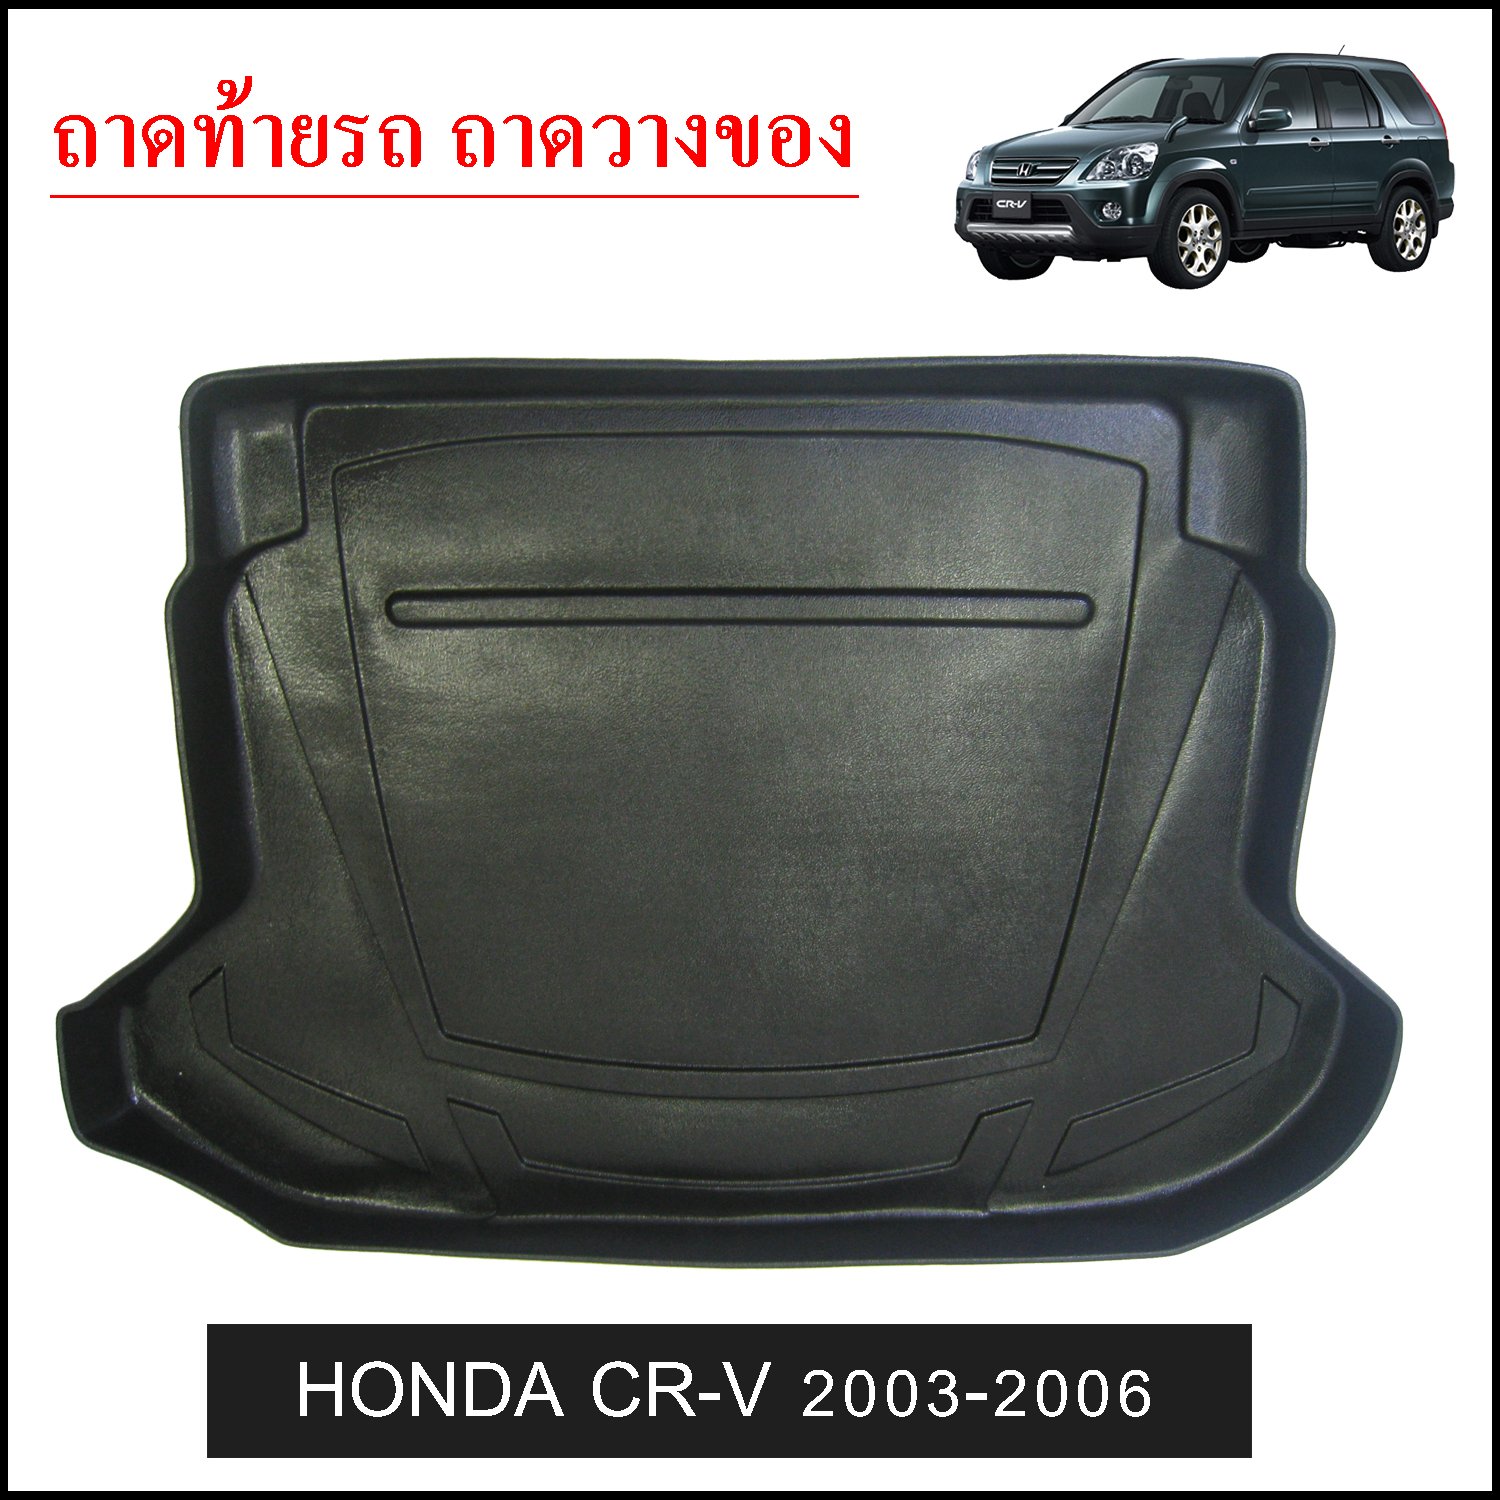 ถาดท้ายวางของ Honda CRV 2003-2006